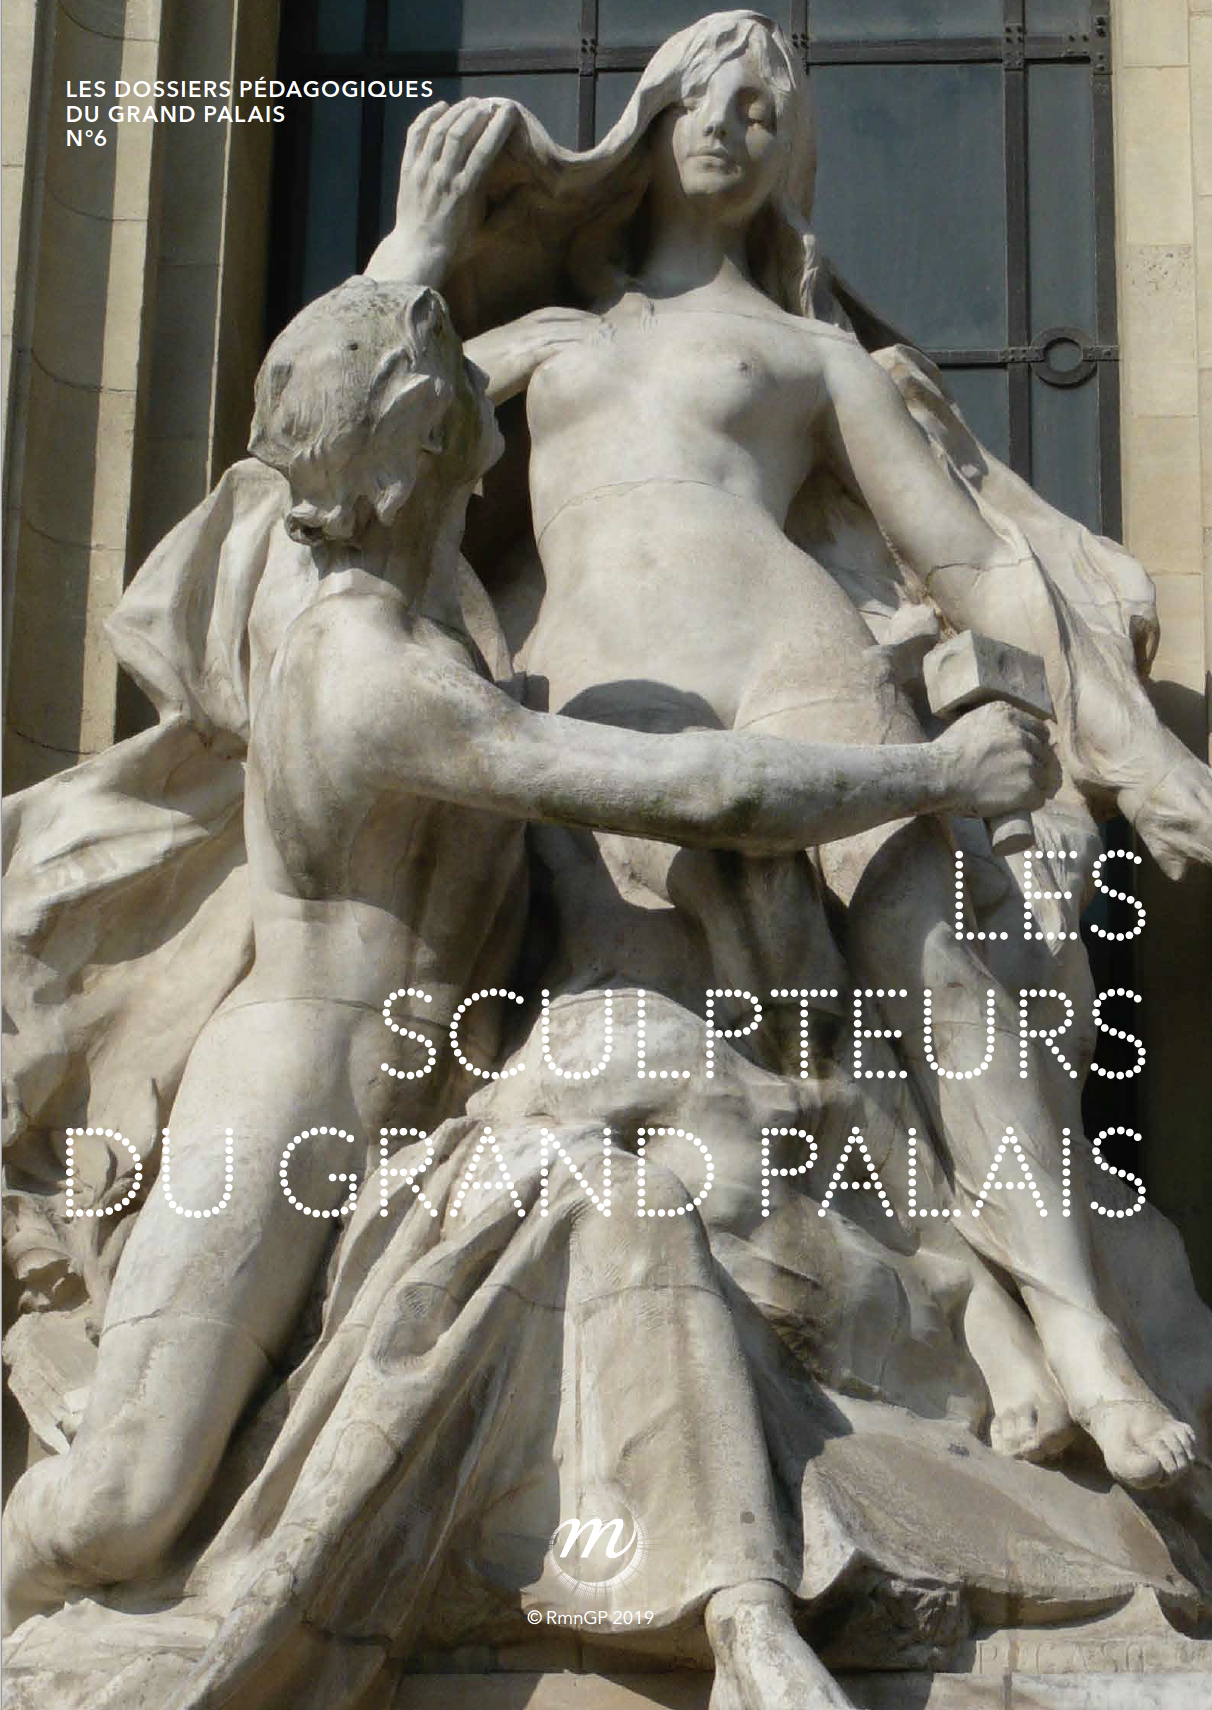 Les sculpteurs du Grand Palais